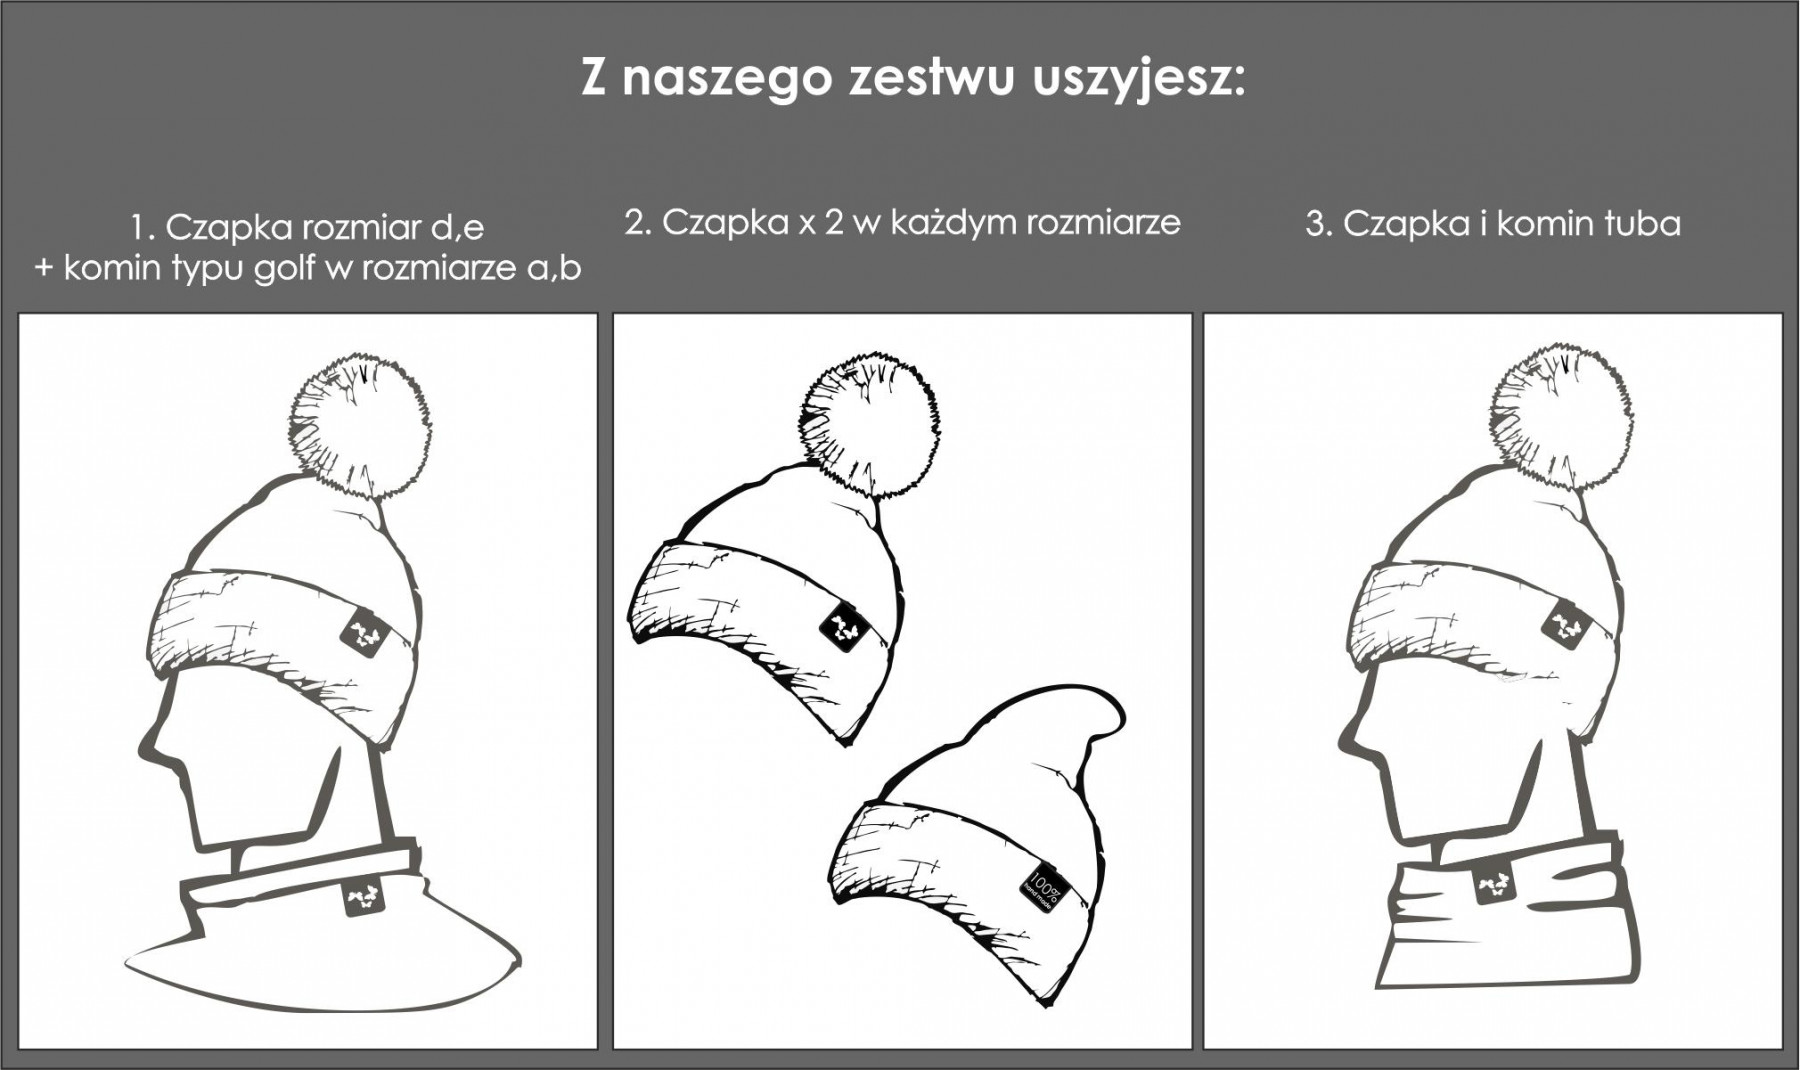 FUKSJA / lis - Zestaw kreatywny do uszycia czapki i komina